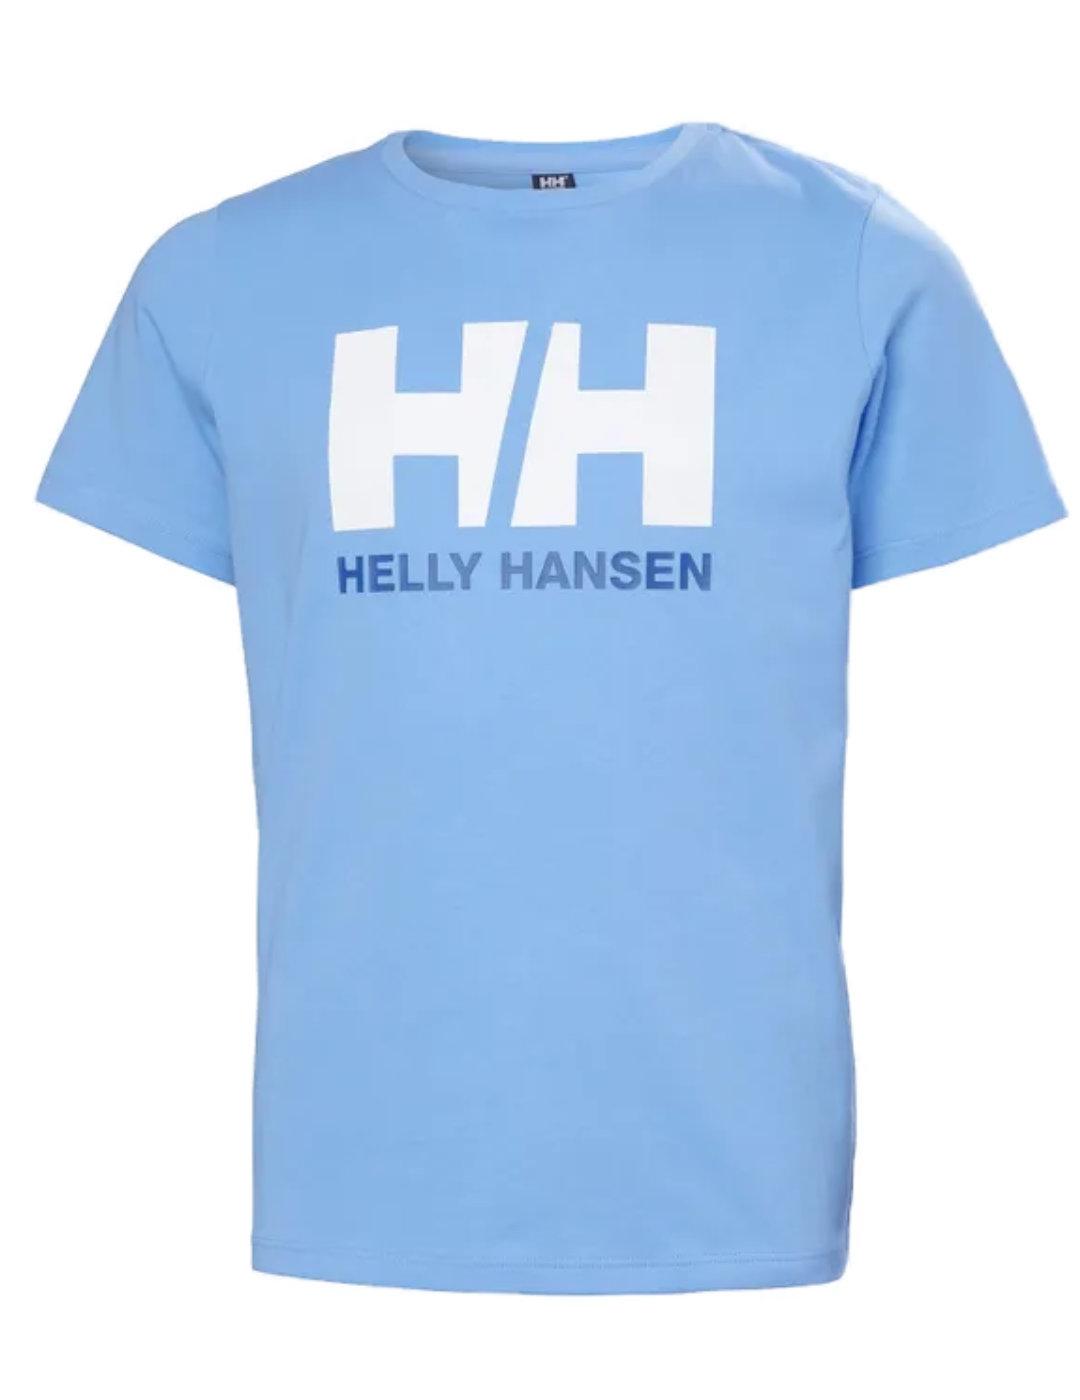 PUMA Helly Hansen X - Camiseta casual de manga cuello redondo para hombre,  color azul, Azul / Patchwork